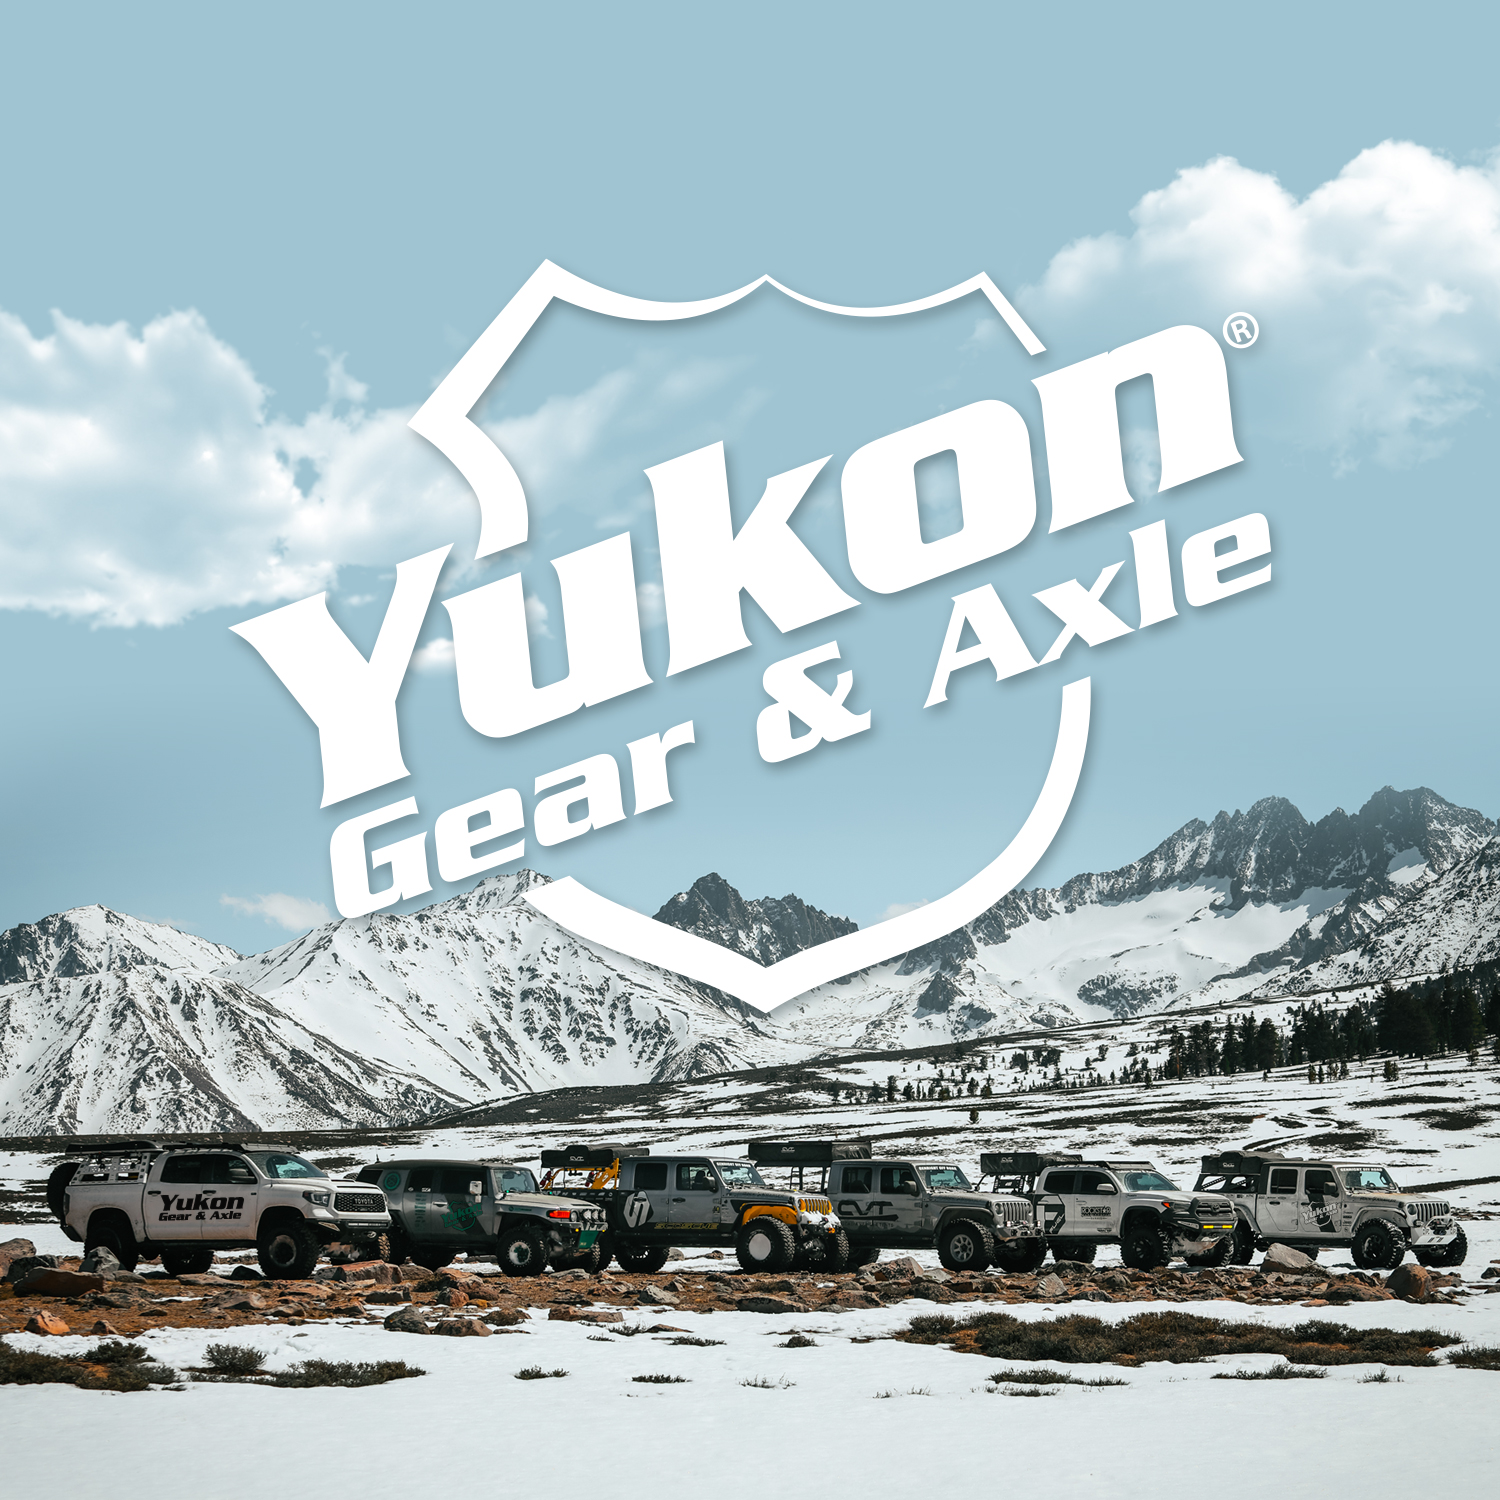 Yukon Dura Grip Spider Gear Set for GM 8.5" Differential with 28 spline axles 